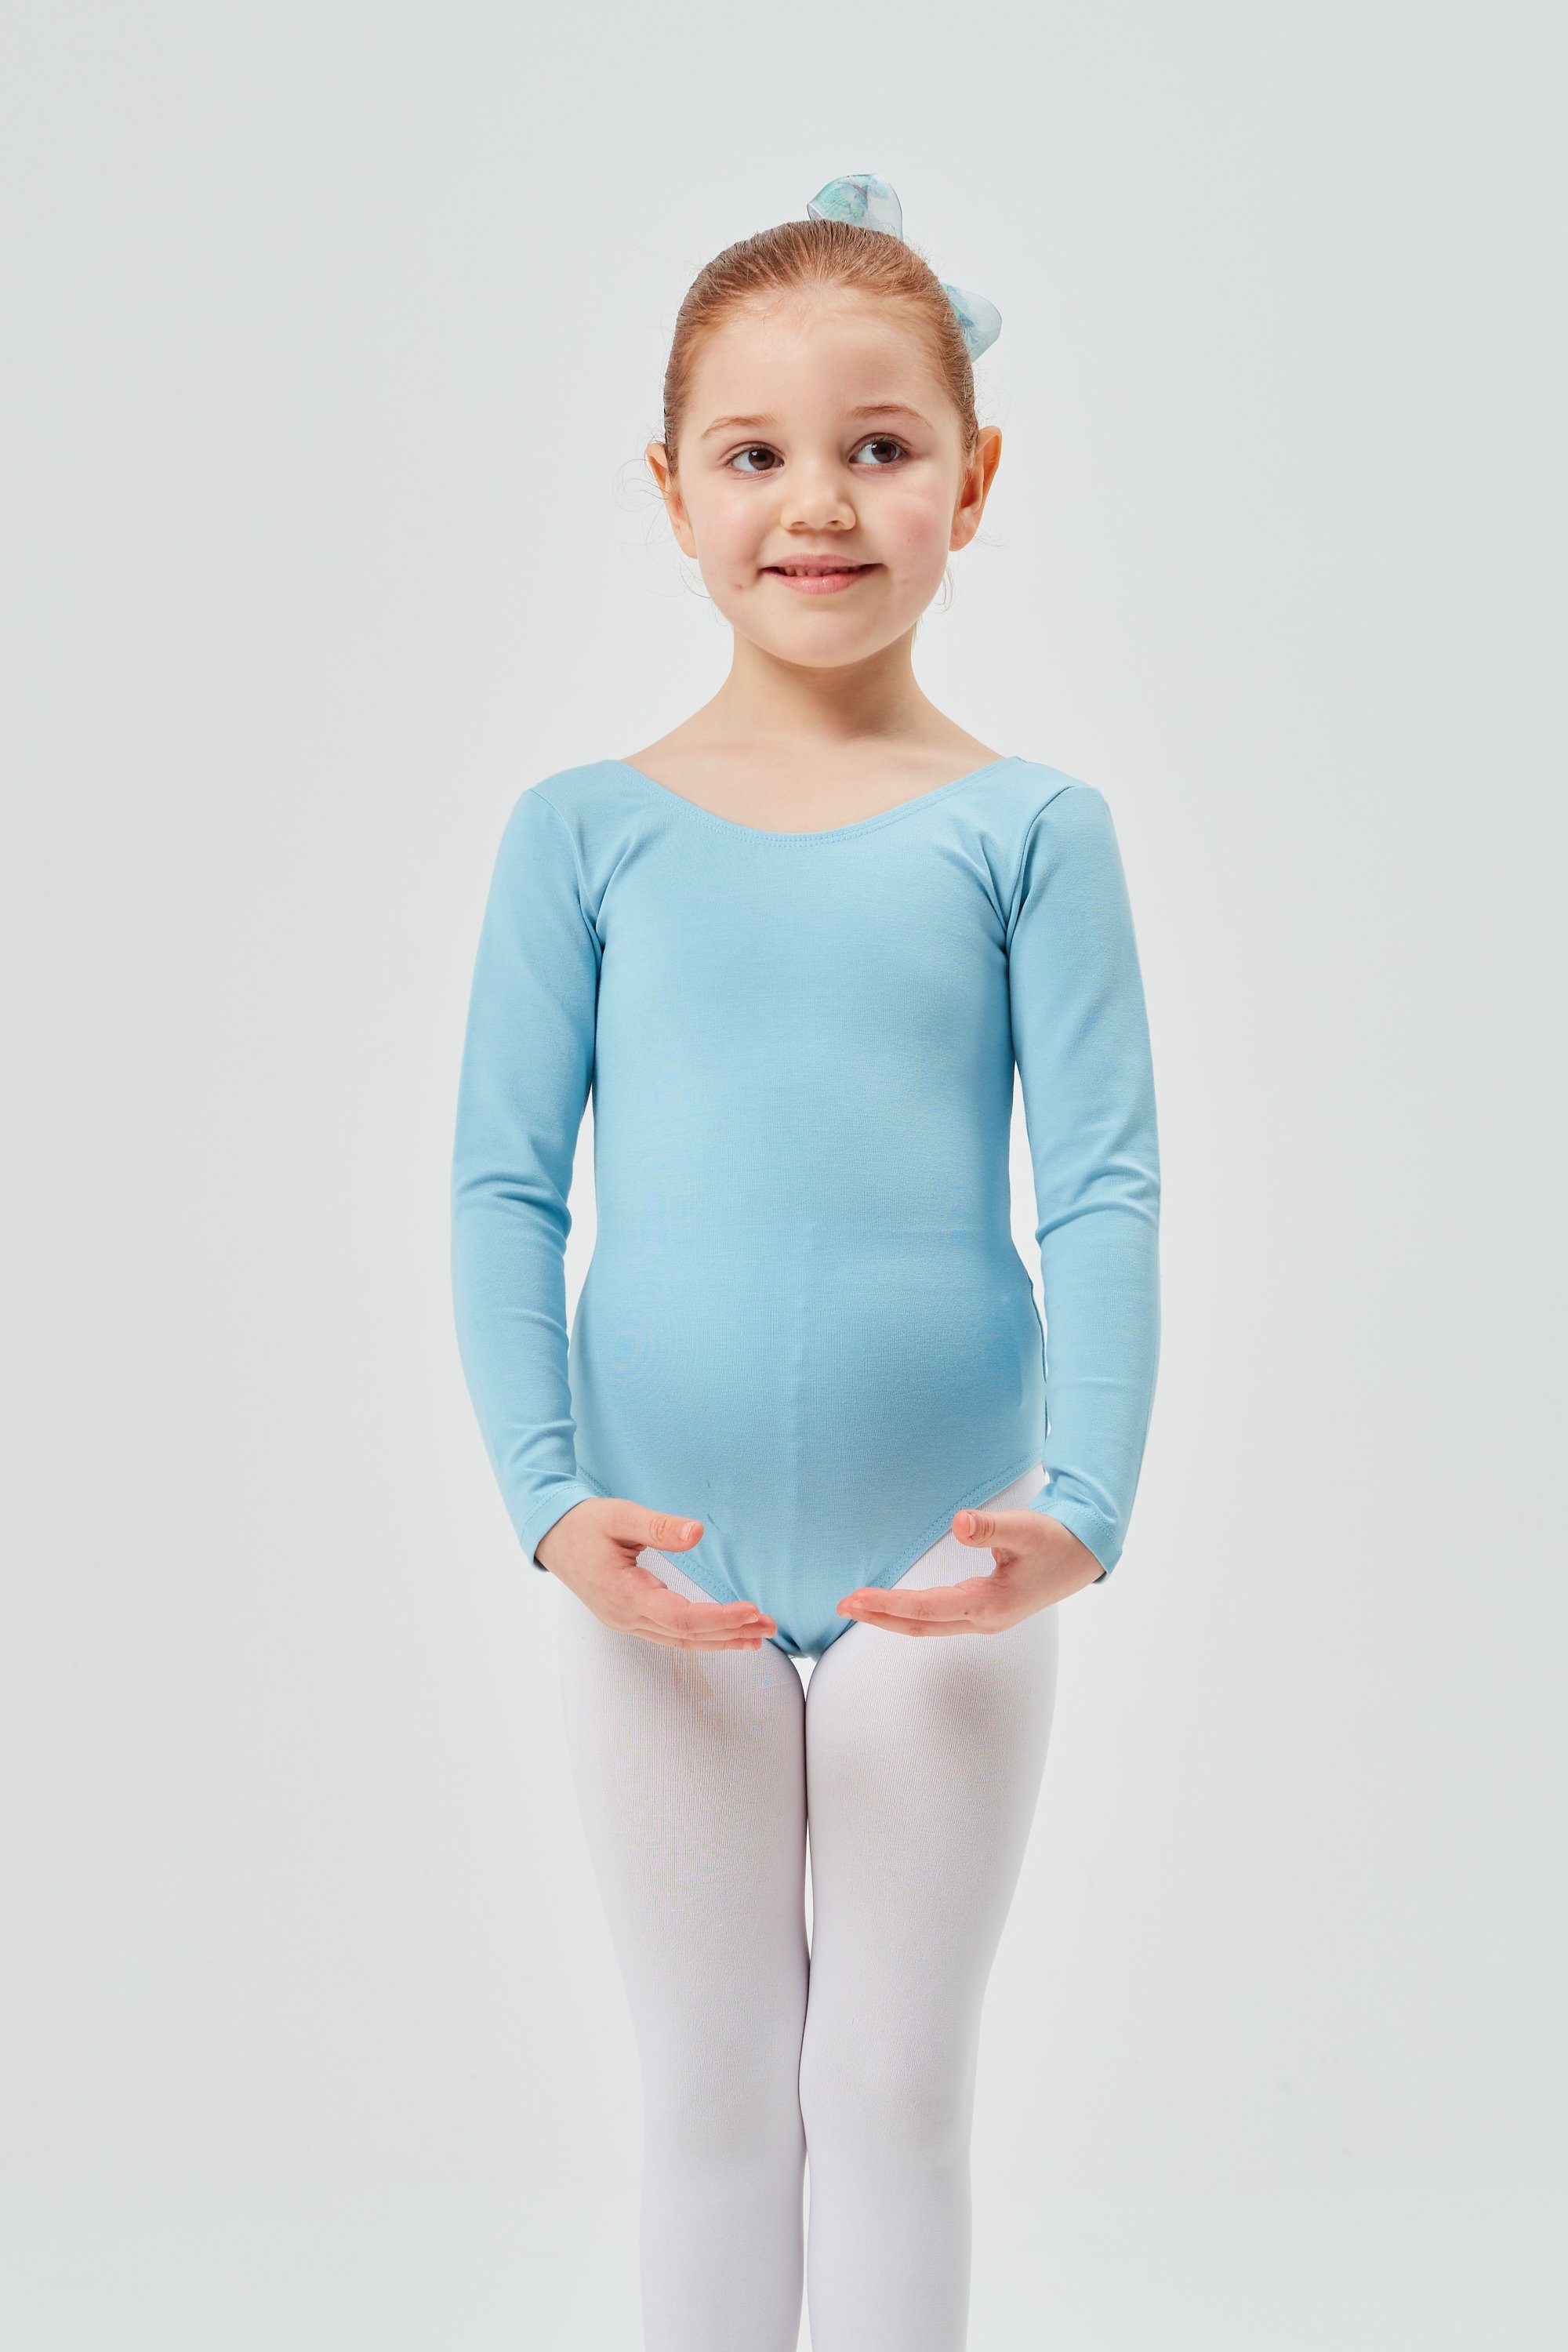 Ballett Langarm Body weichem aus Kinder Baumwollmischgewebe hellblau tanzmuster Trikot fürs Ballettbody Lilly